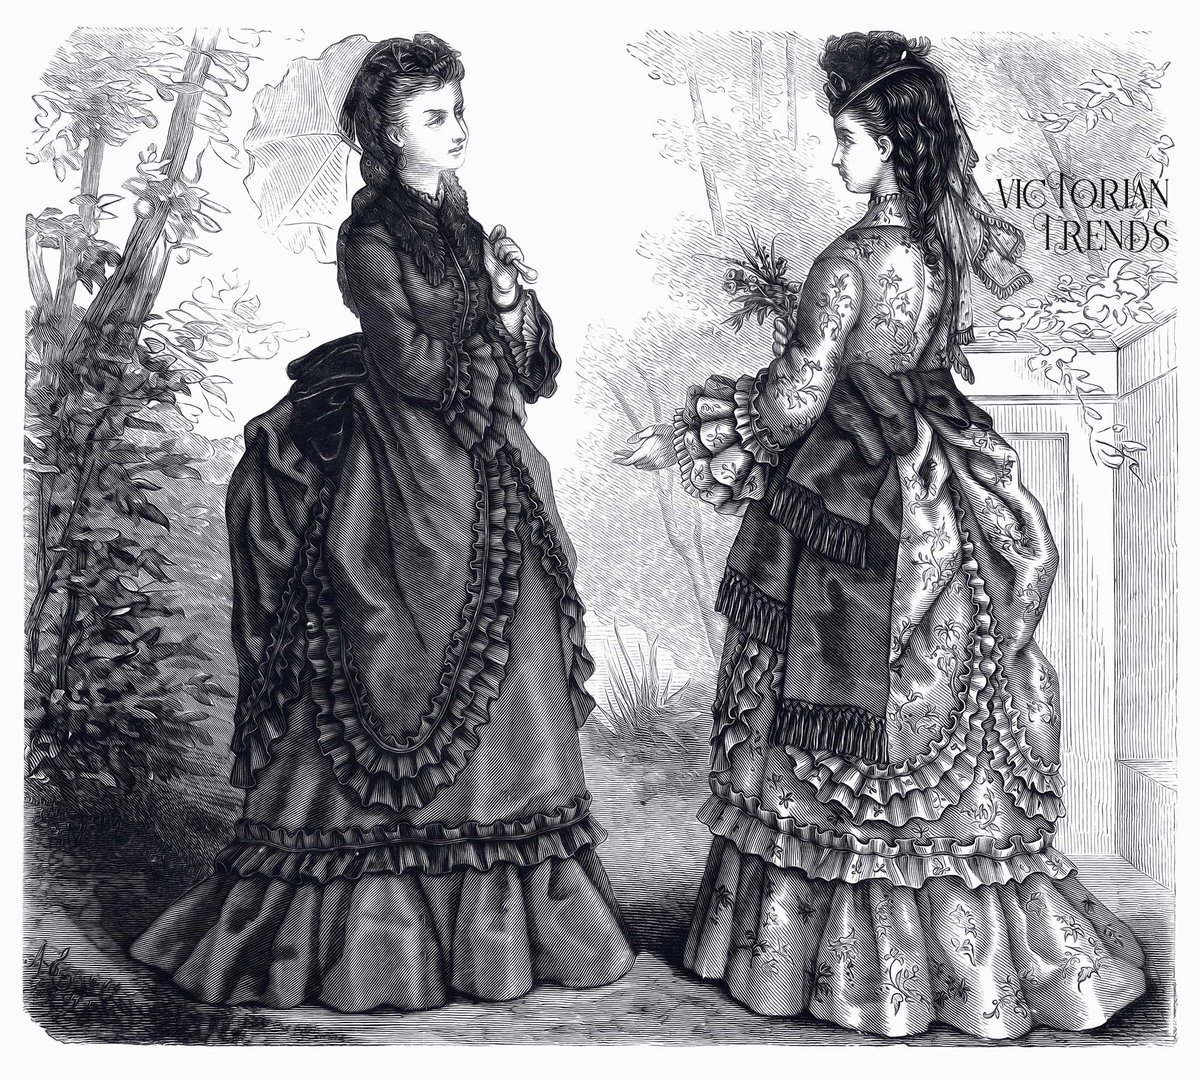 #Fashionhistory: Ladies in promenade dresses at the park, 1872. 
|| #19thcenturyfashion #americanfashion #belleépoque #fashionillustration #gildedage #victoriantrends #vintageart #vintageillustration